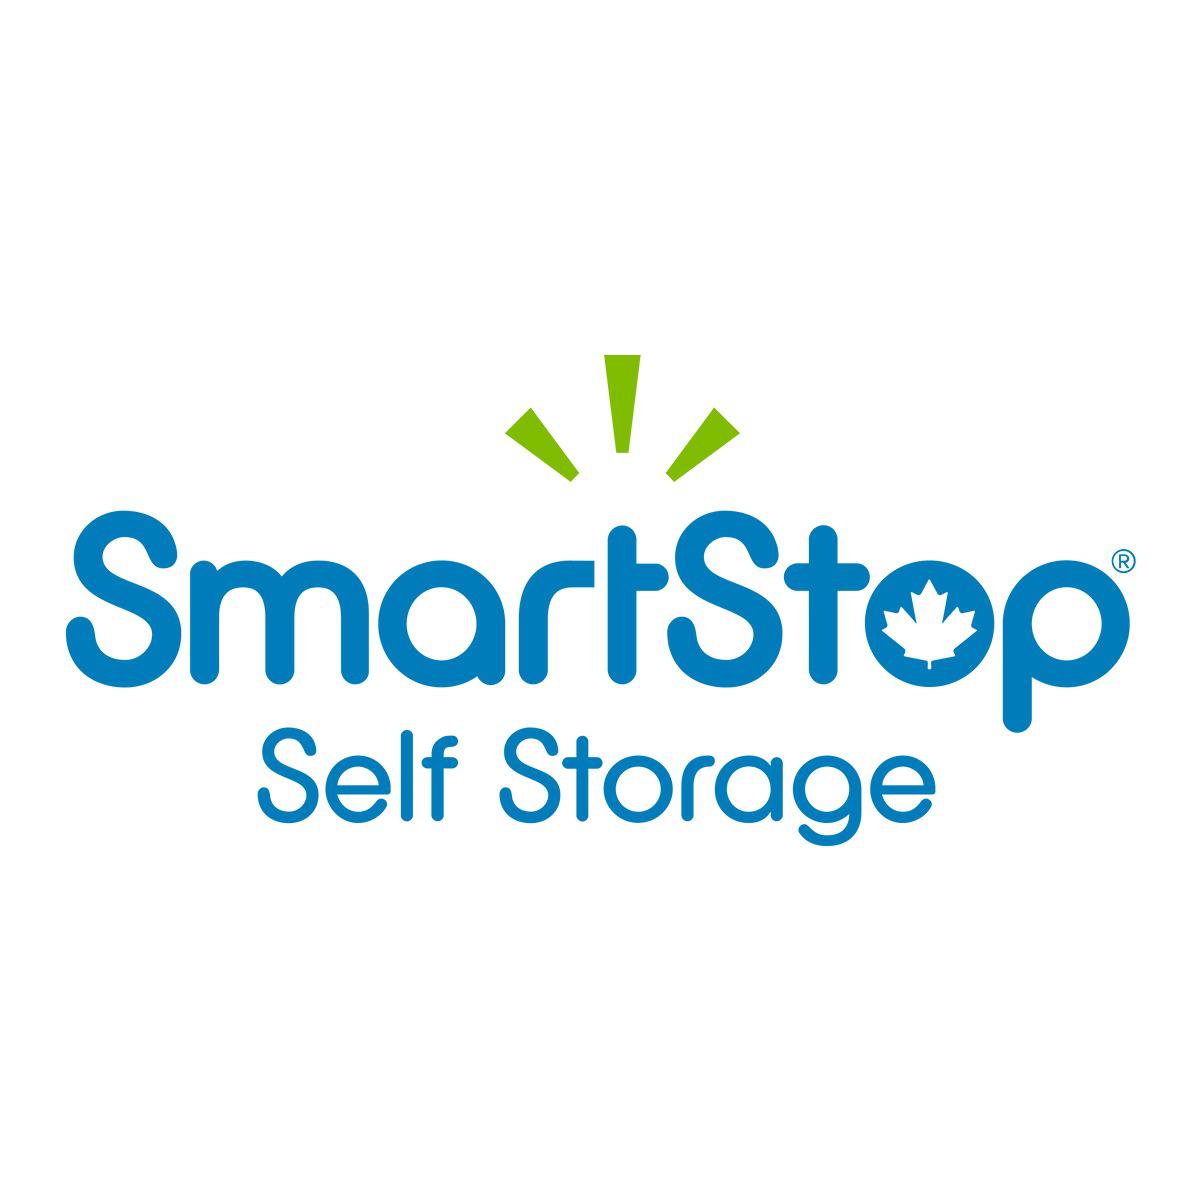 SmartStop Self Storage à Brampton: Logo